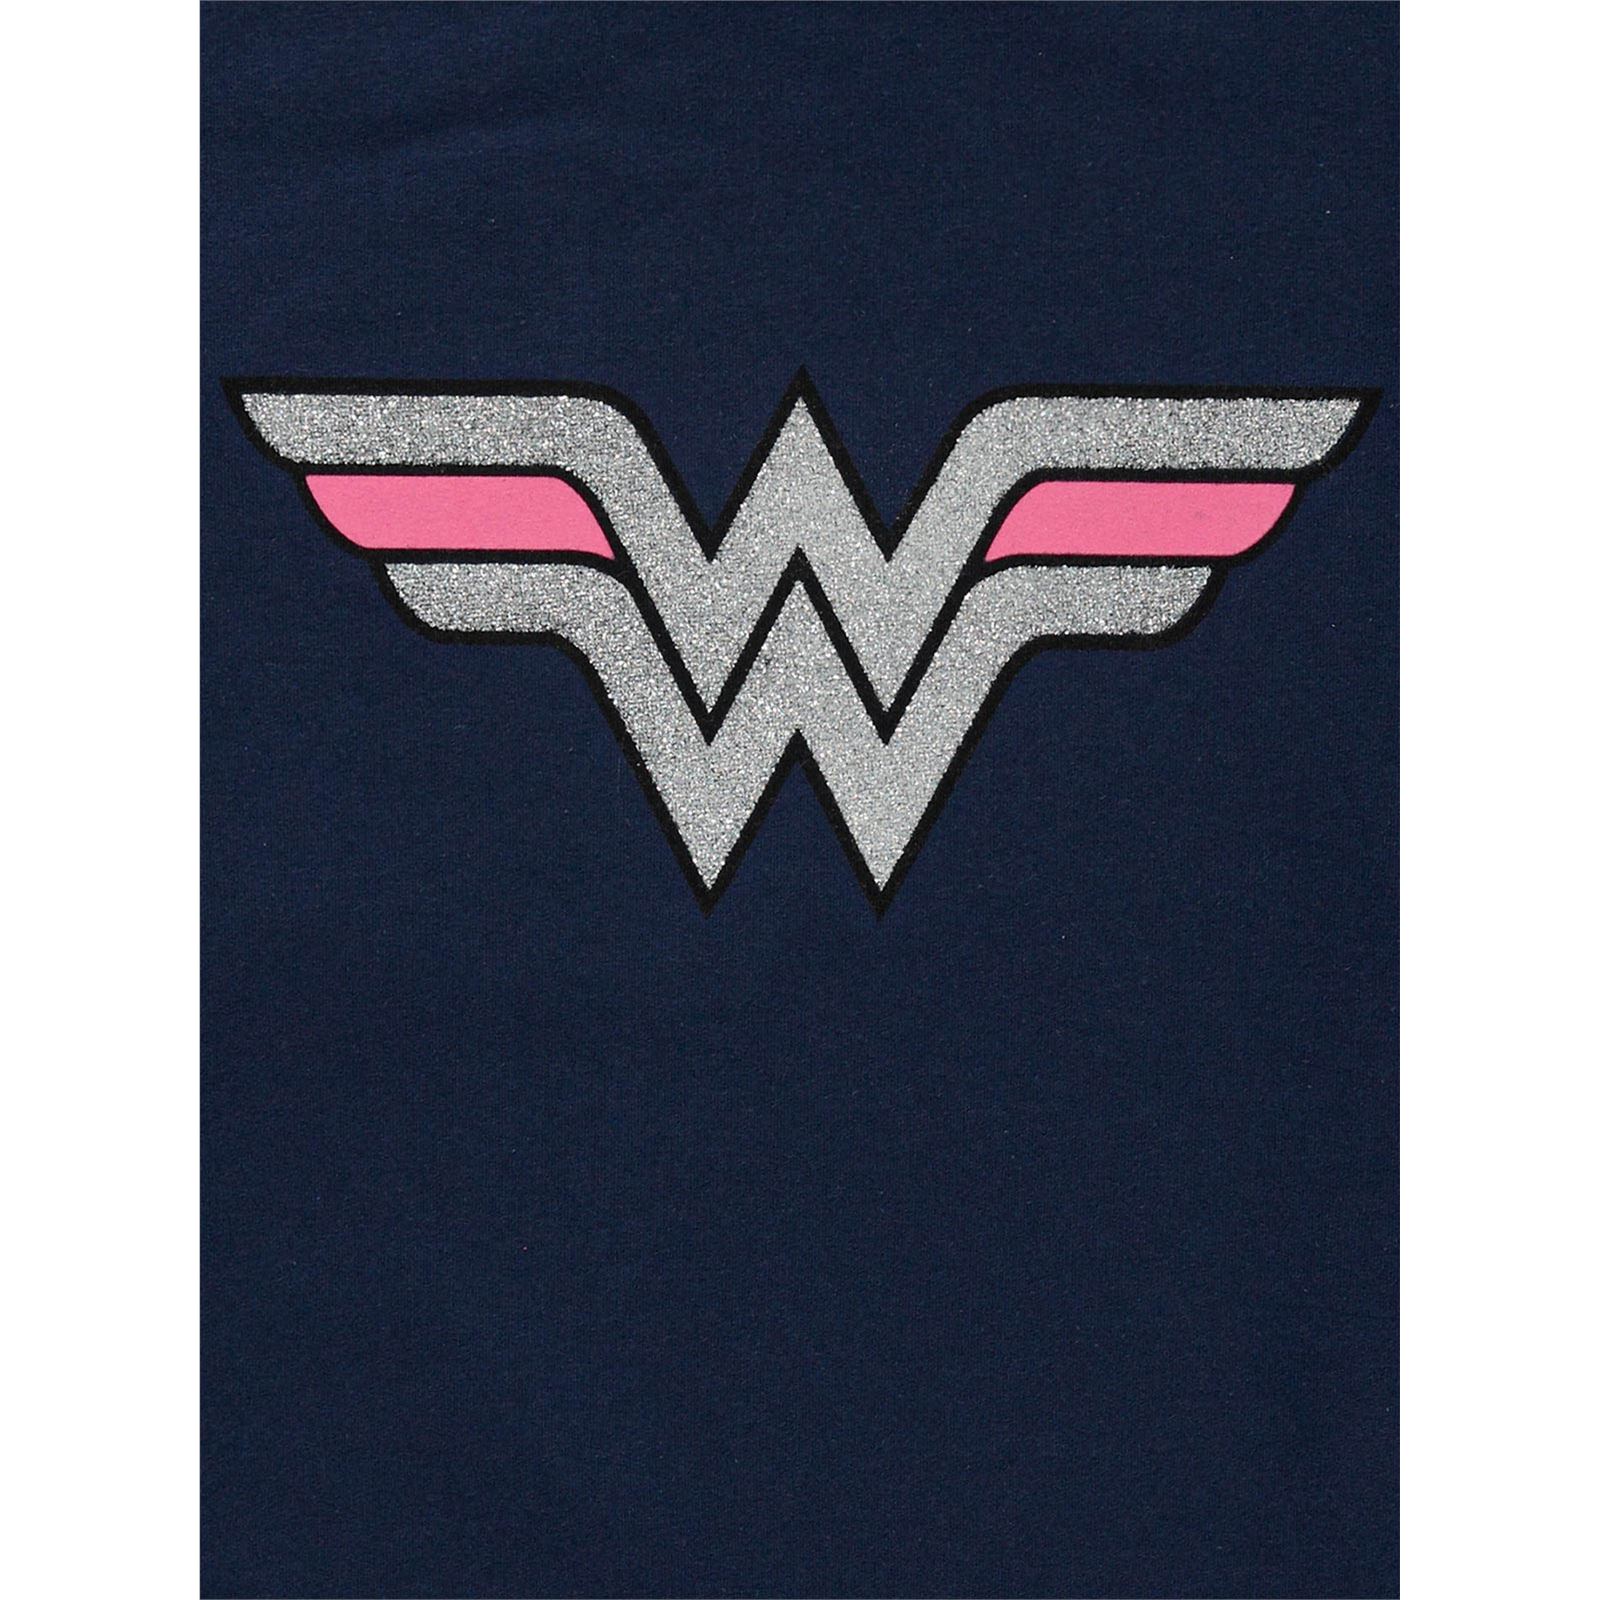 Wonder Woman Kız Çocuk Sweatshirt 10-13 Yaş Lacivert